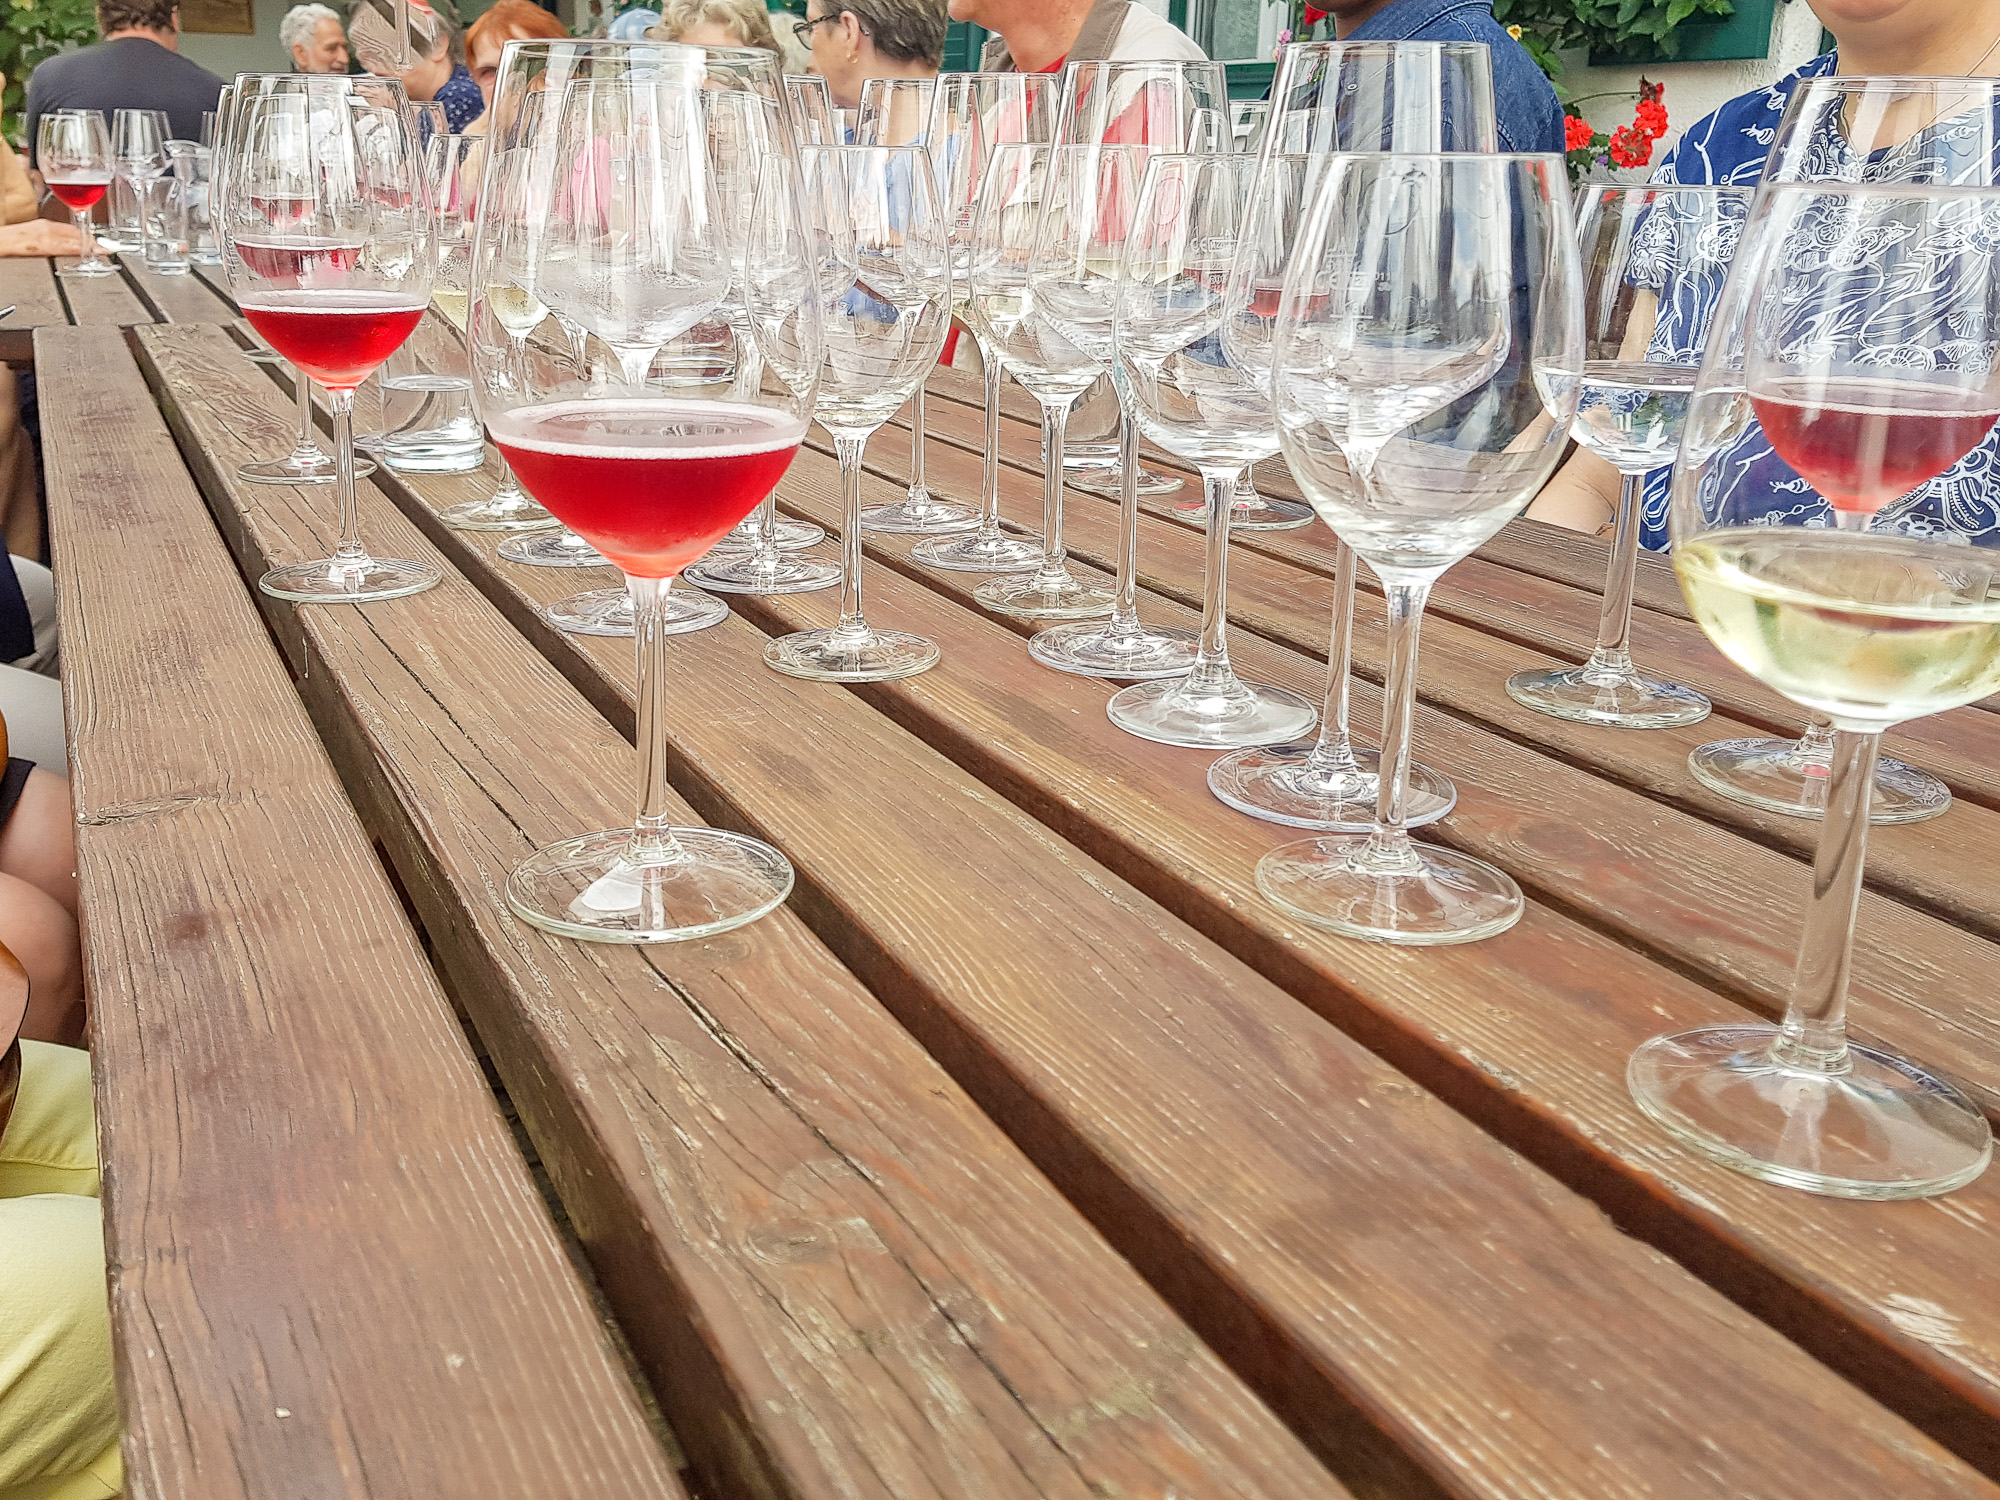 Tisch voller Weingläser zur Weinverkostung in der Südsteiermark